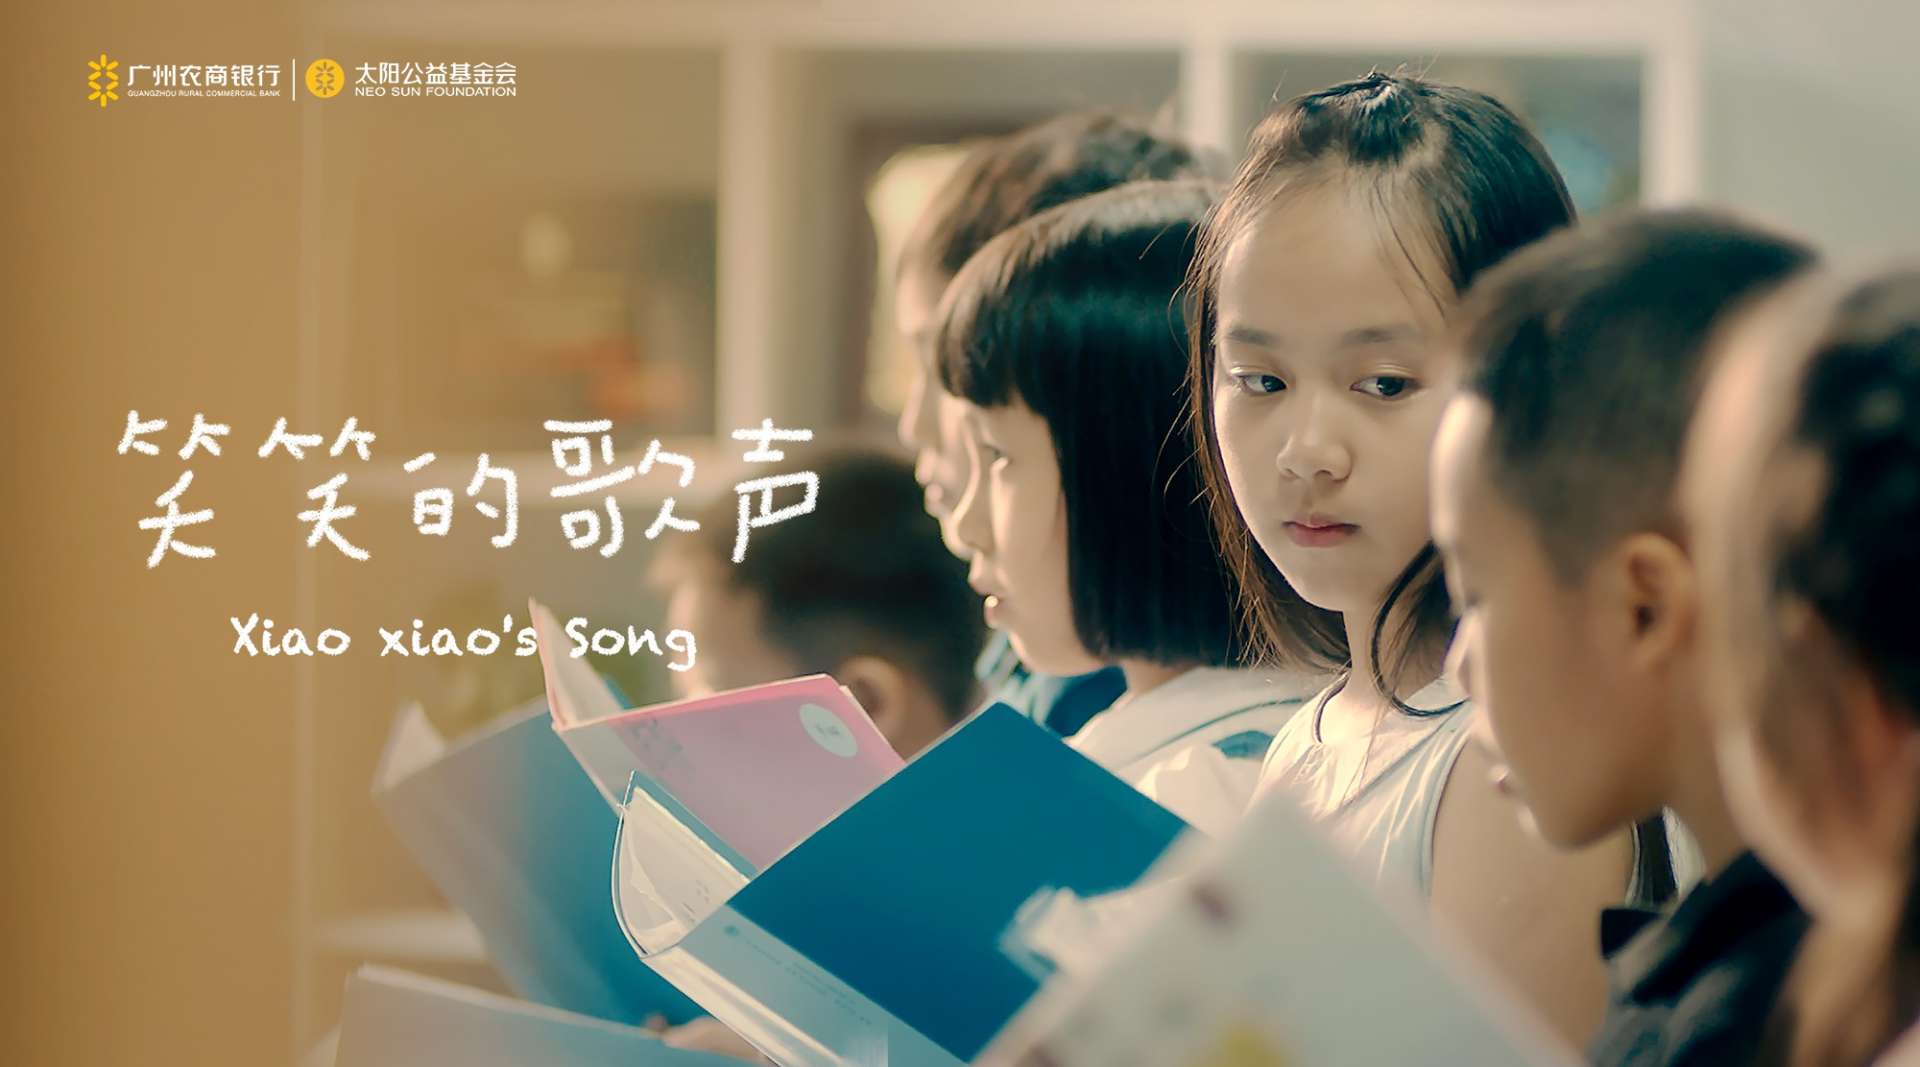 广州农商银行 - 励志公益短片《笑笑的歌声》